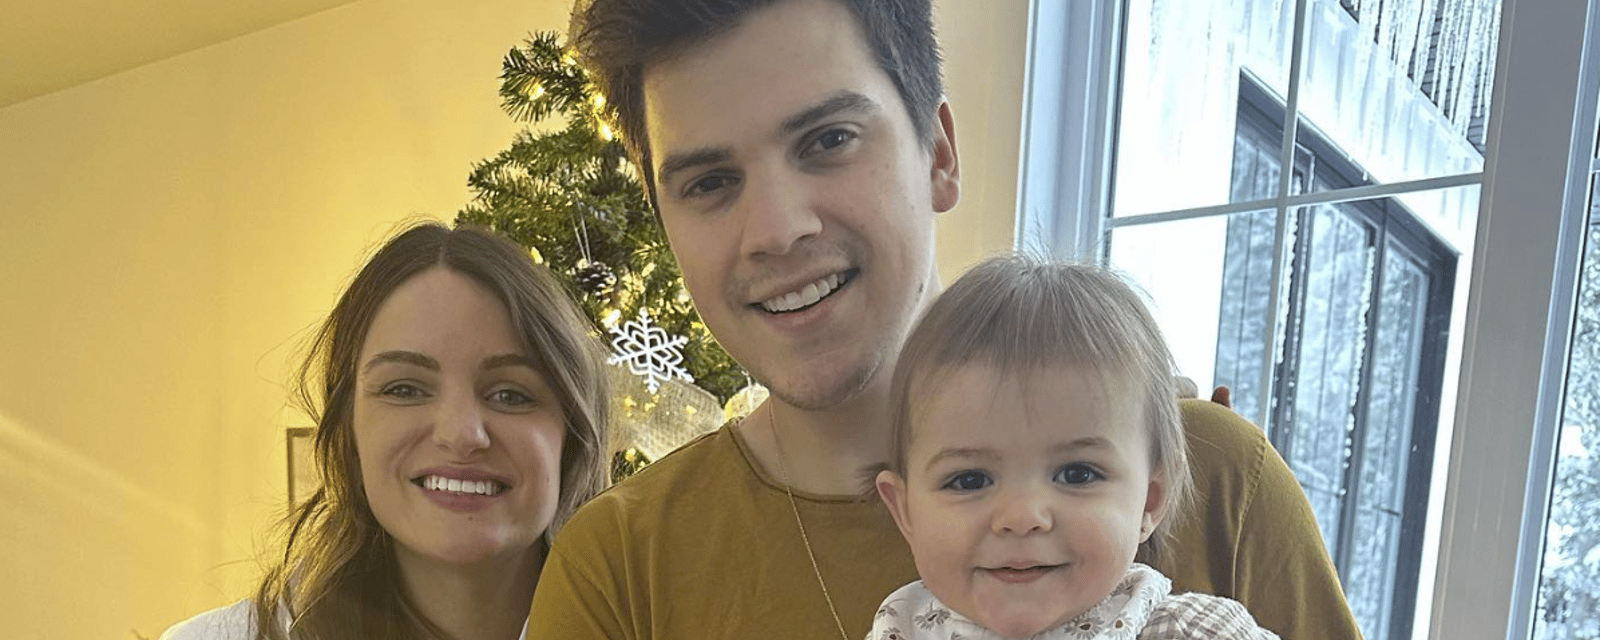 Ludovick Bourgeois et son amoureuse écrivent un touchant message à leur fille pour ses 2 ans